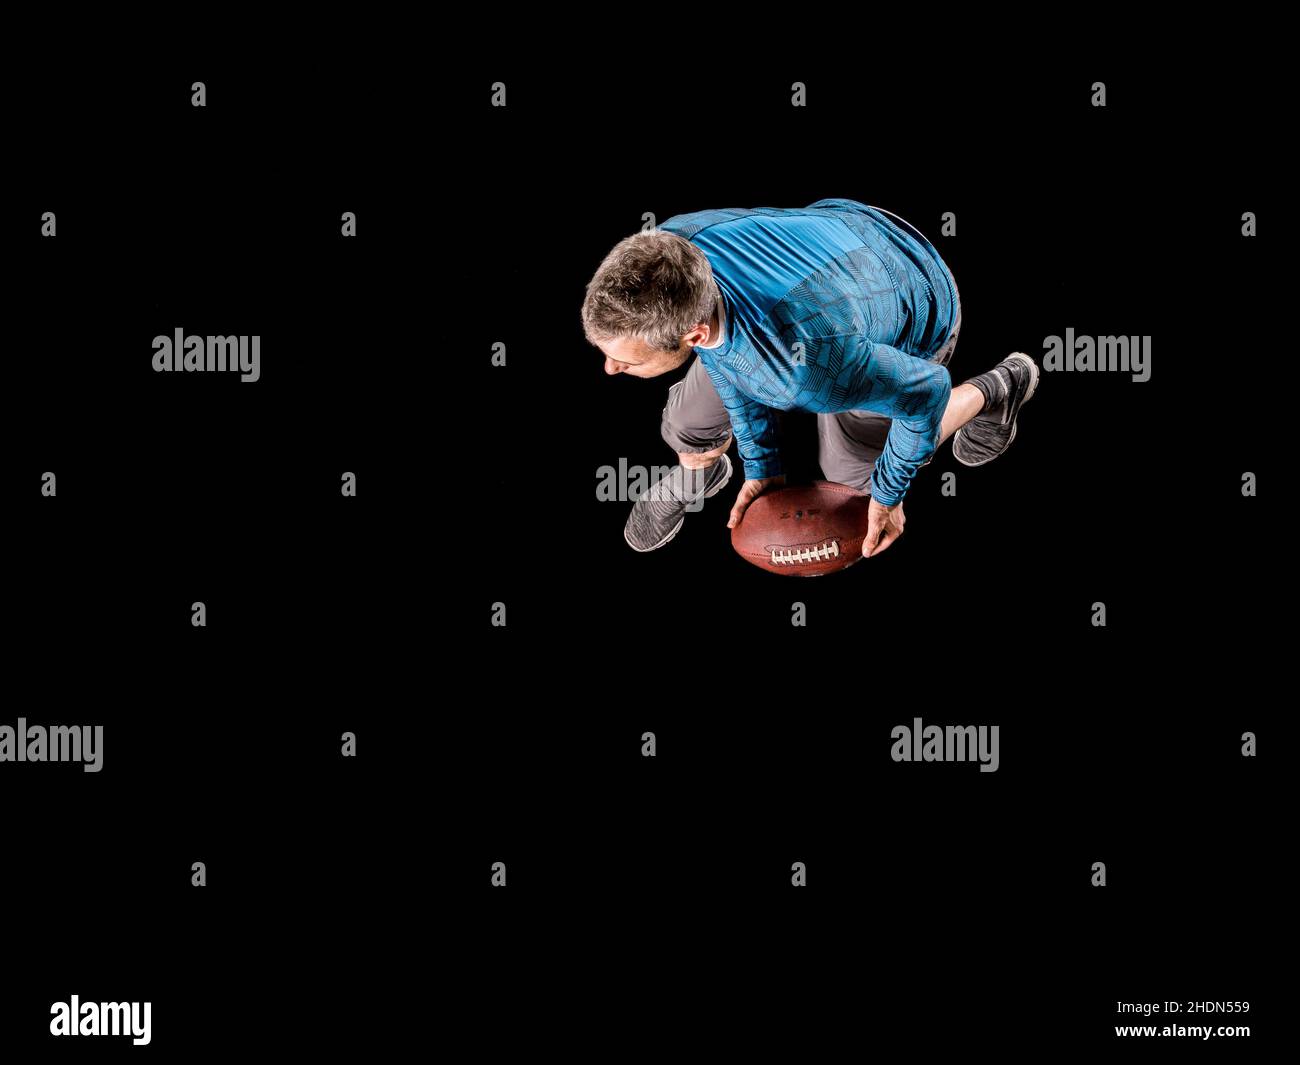 atleta, atleta, atleta, atleta, sport di palla, football americano, sportivi, palloni da calcio americani Foto Stock